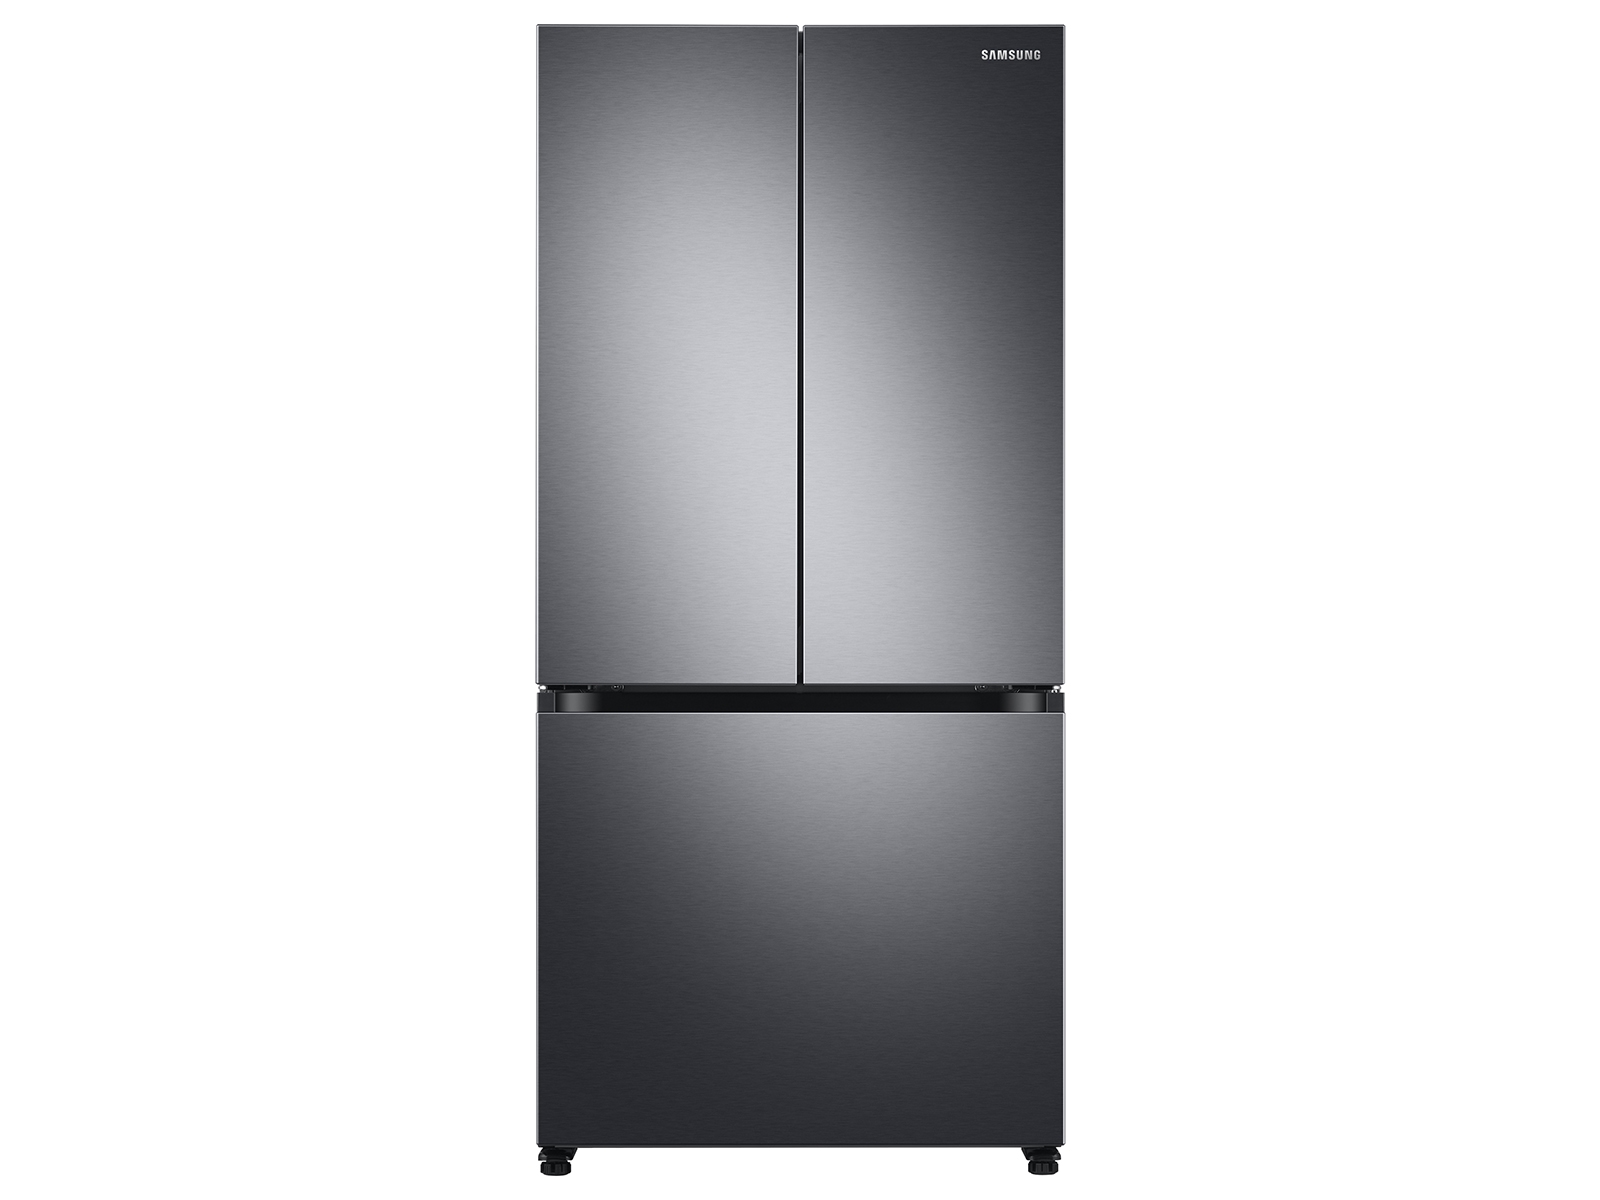 movimiento algun lado Credencial 18 cu. refrigerador inteligente de 3 puertas y 3 puertas con profundidad de  mostrador en Neveras negras de acero inoxidable - RF18A5101SG / AA |  Samsung EE.UU.